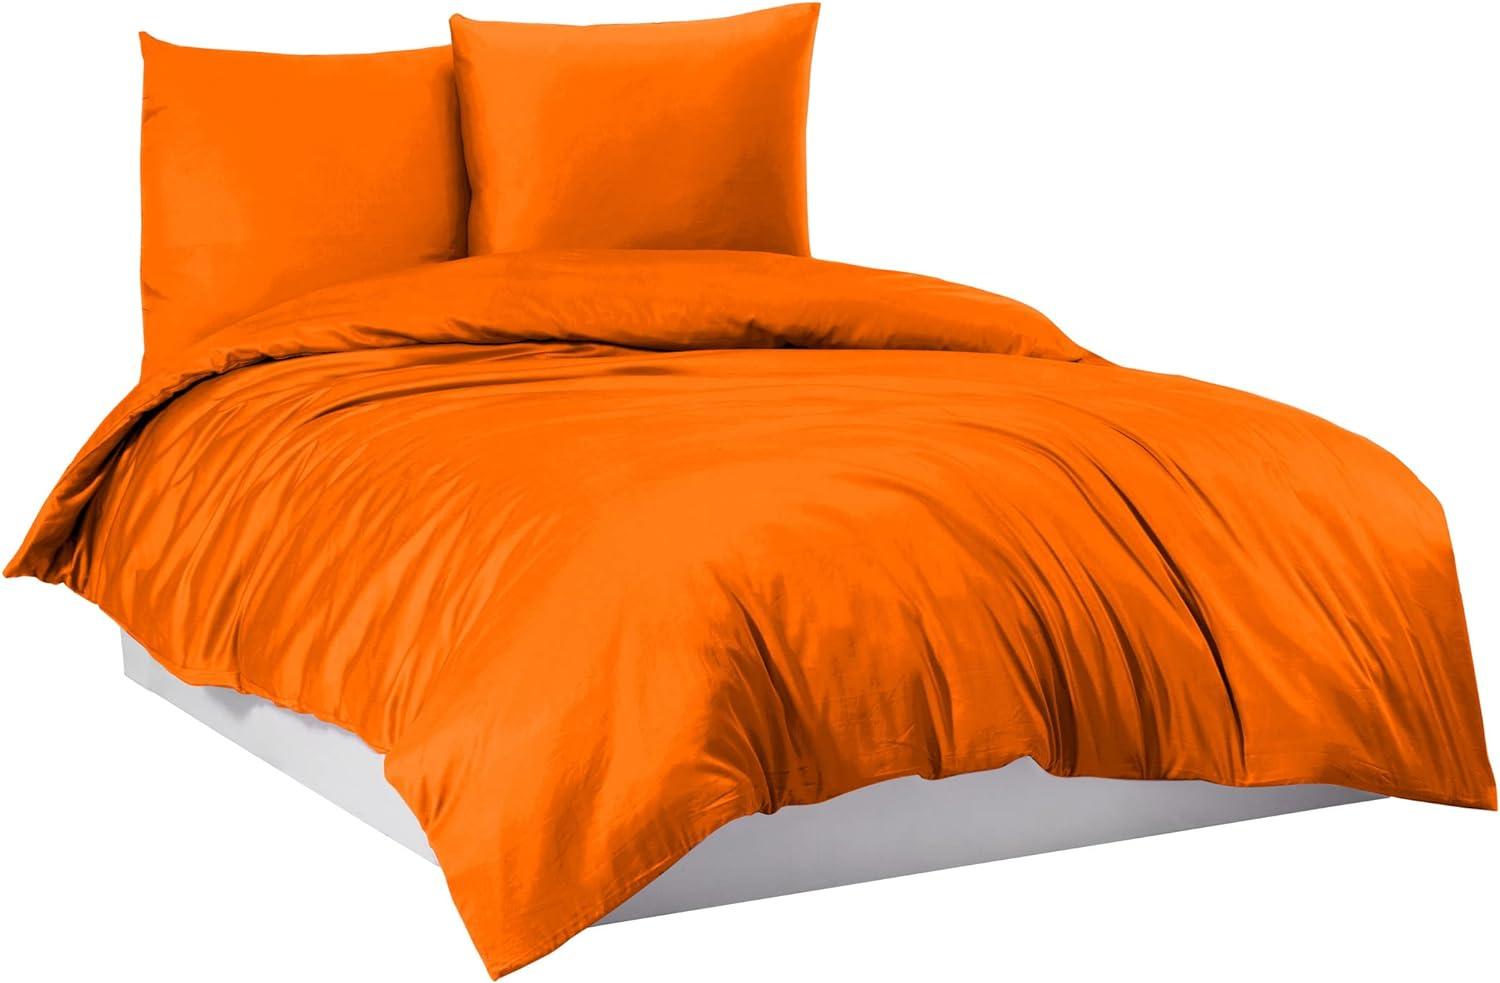 Mixibaby Bettwäsche Bettgarnitur Bettbezug 100% Baumwolle 135x200 155x220 200x200 200x220, Farbe:Orange, Größe:200 x 220 cm Bild 1